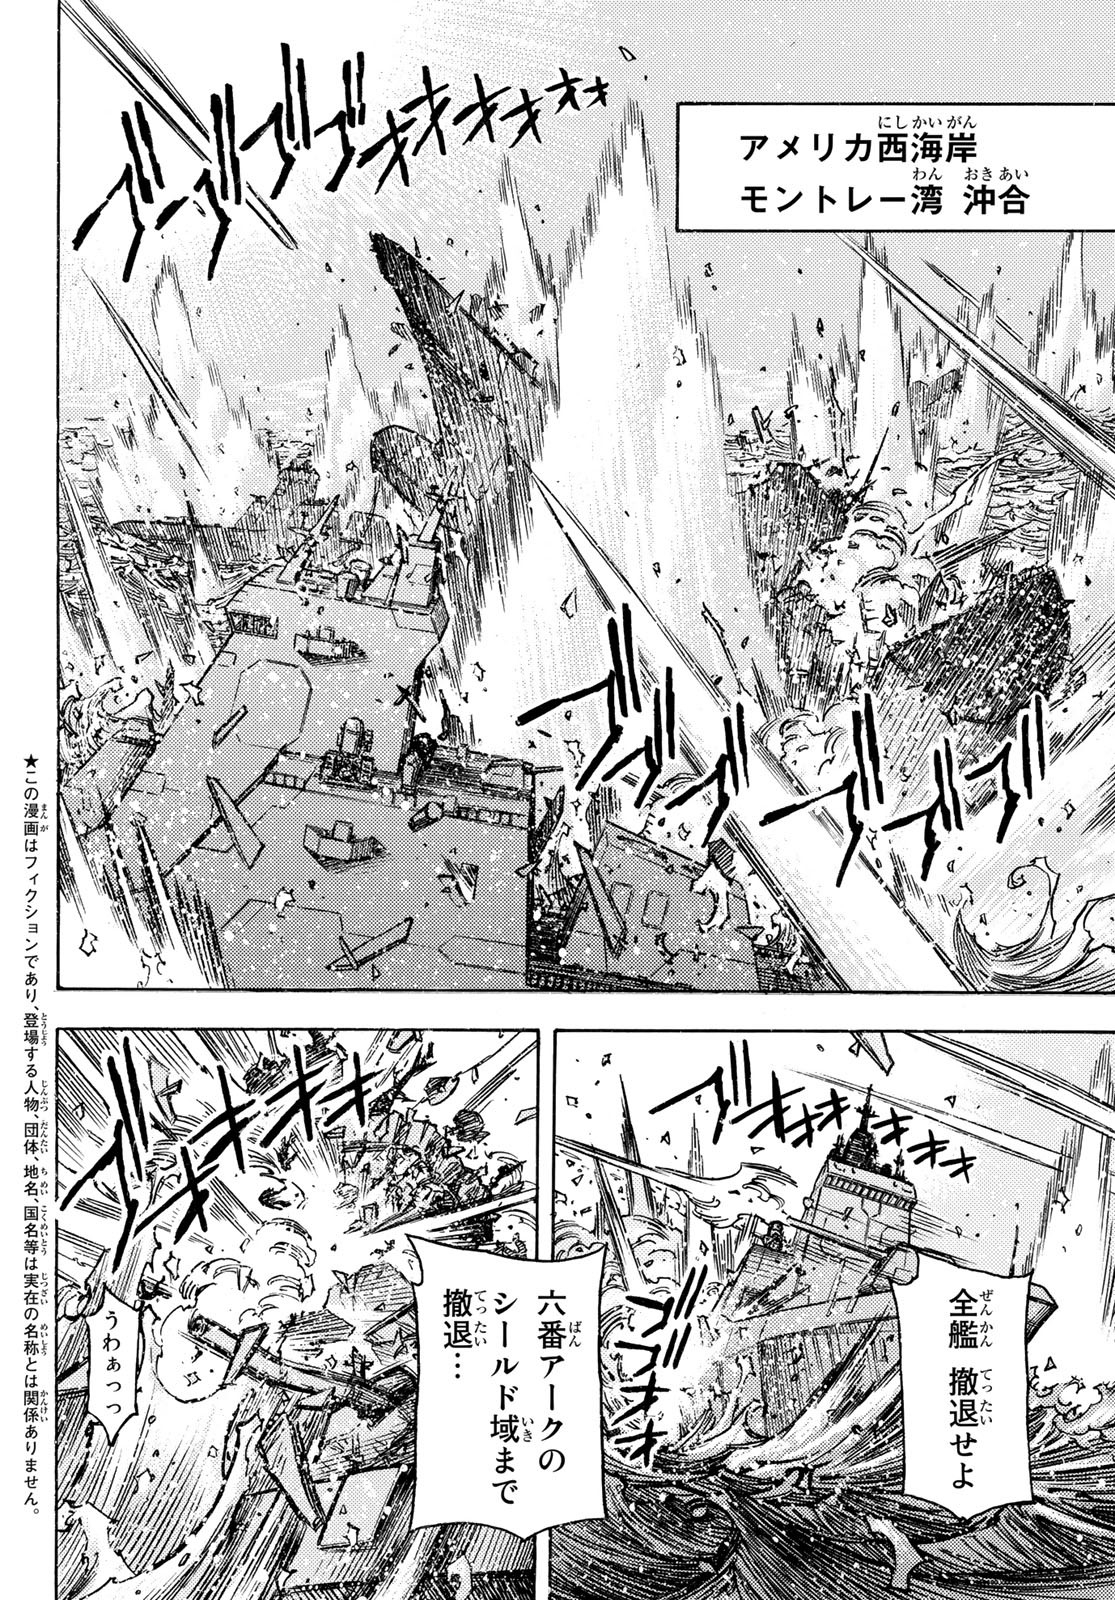 Mugou no Schnell Gear: Chikyuugai Kisouka AI - Chapter 44 - Page 4